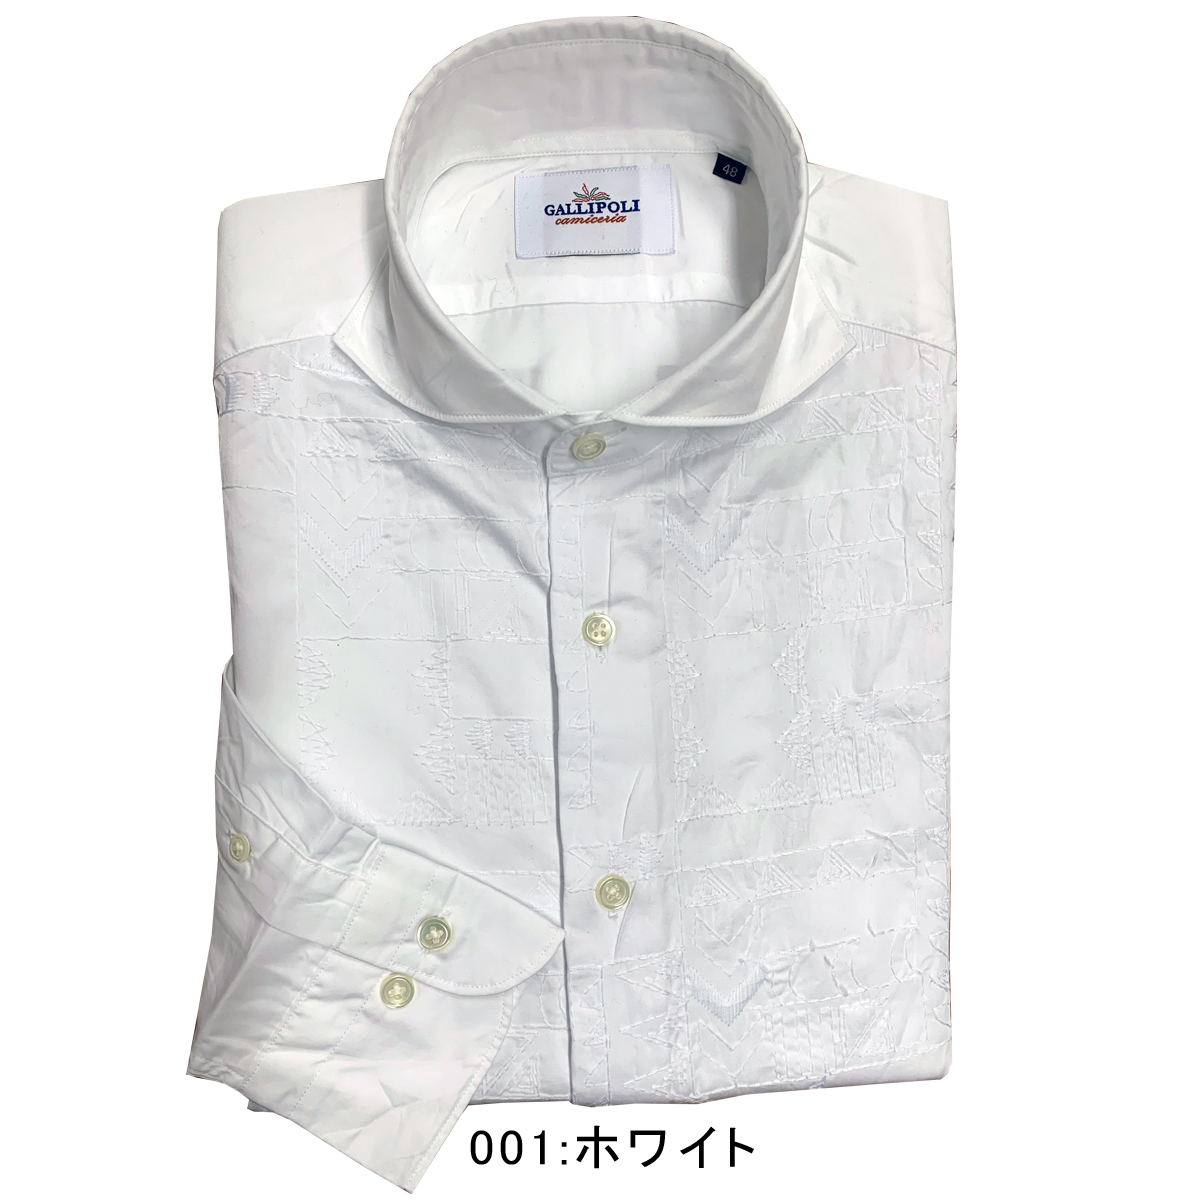 シャツ メンズ 日本製シャツ ジオメトリック 刺繍シャツ 幾何学 カッタウェイ 白 紺 600674 GALLIPOLI camiceria  ガリポリカミチェリア